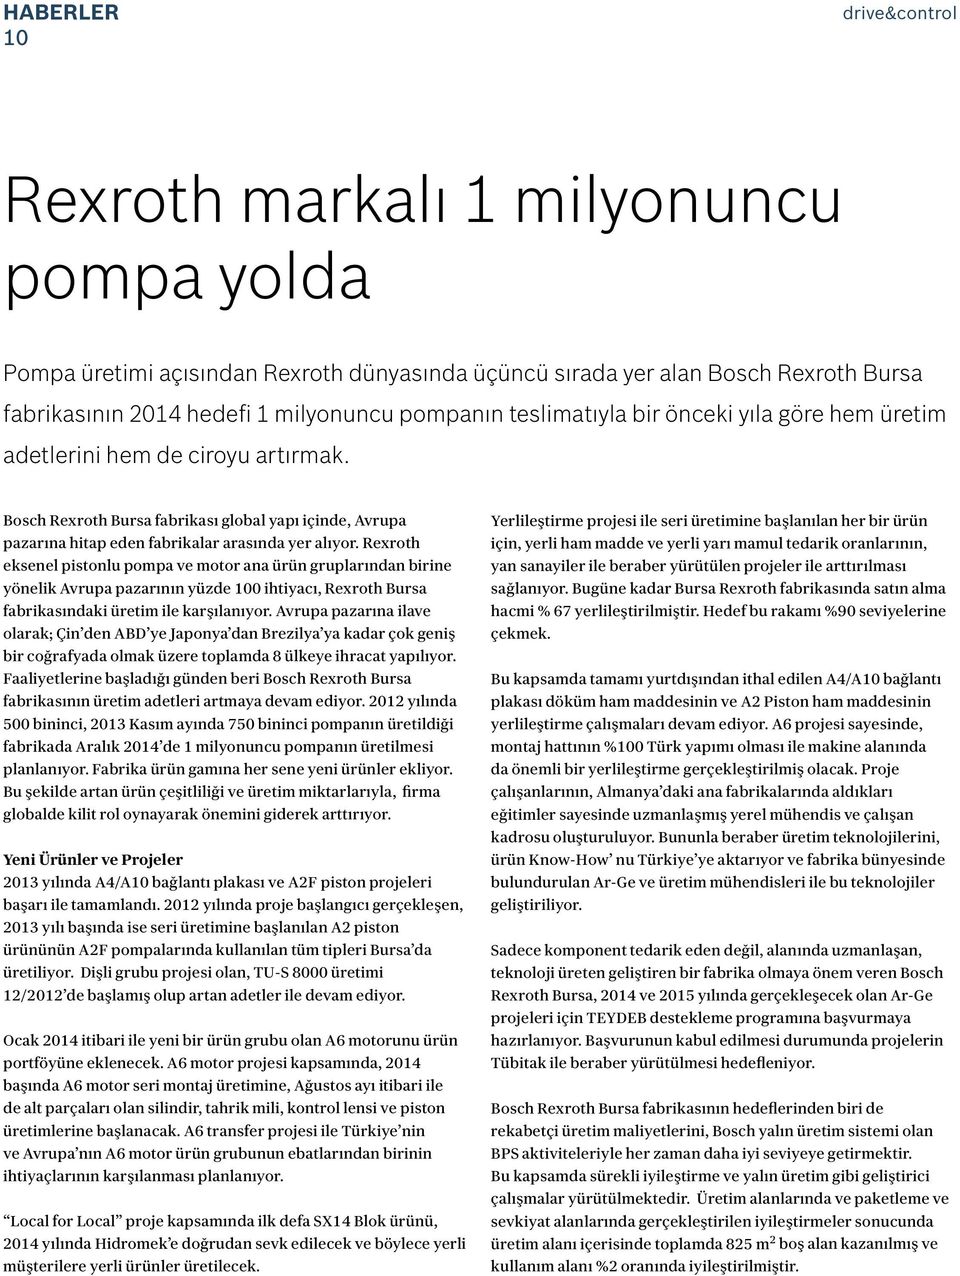 Rexroth eksenel pistonlu pompa ve motor ana ürün gruplarından birine yönelik Avrupa pazarının yüzde 100 ihtiyacı, Rexroth Bursa fabrikasındaki üretim ile karşılanıyor.